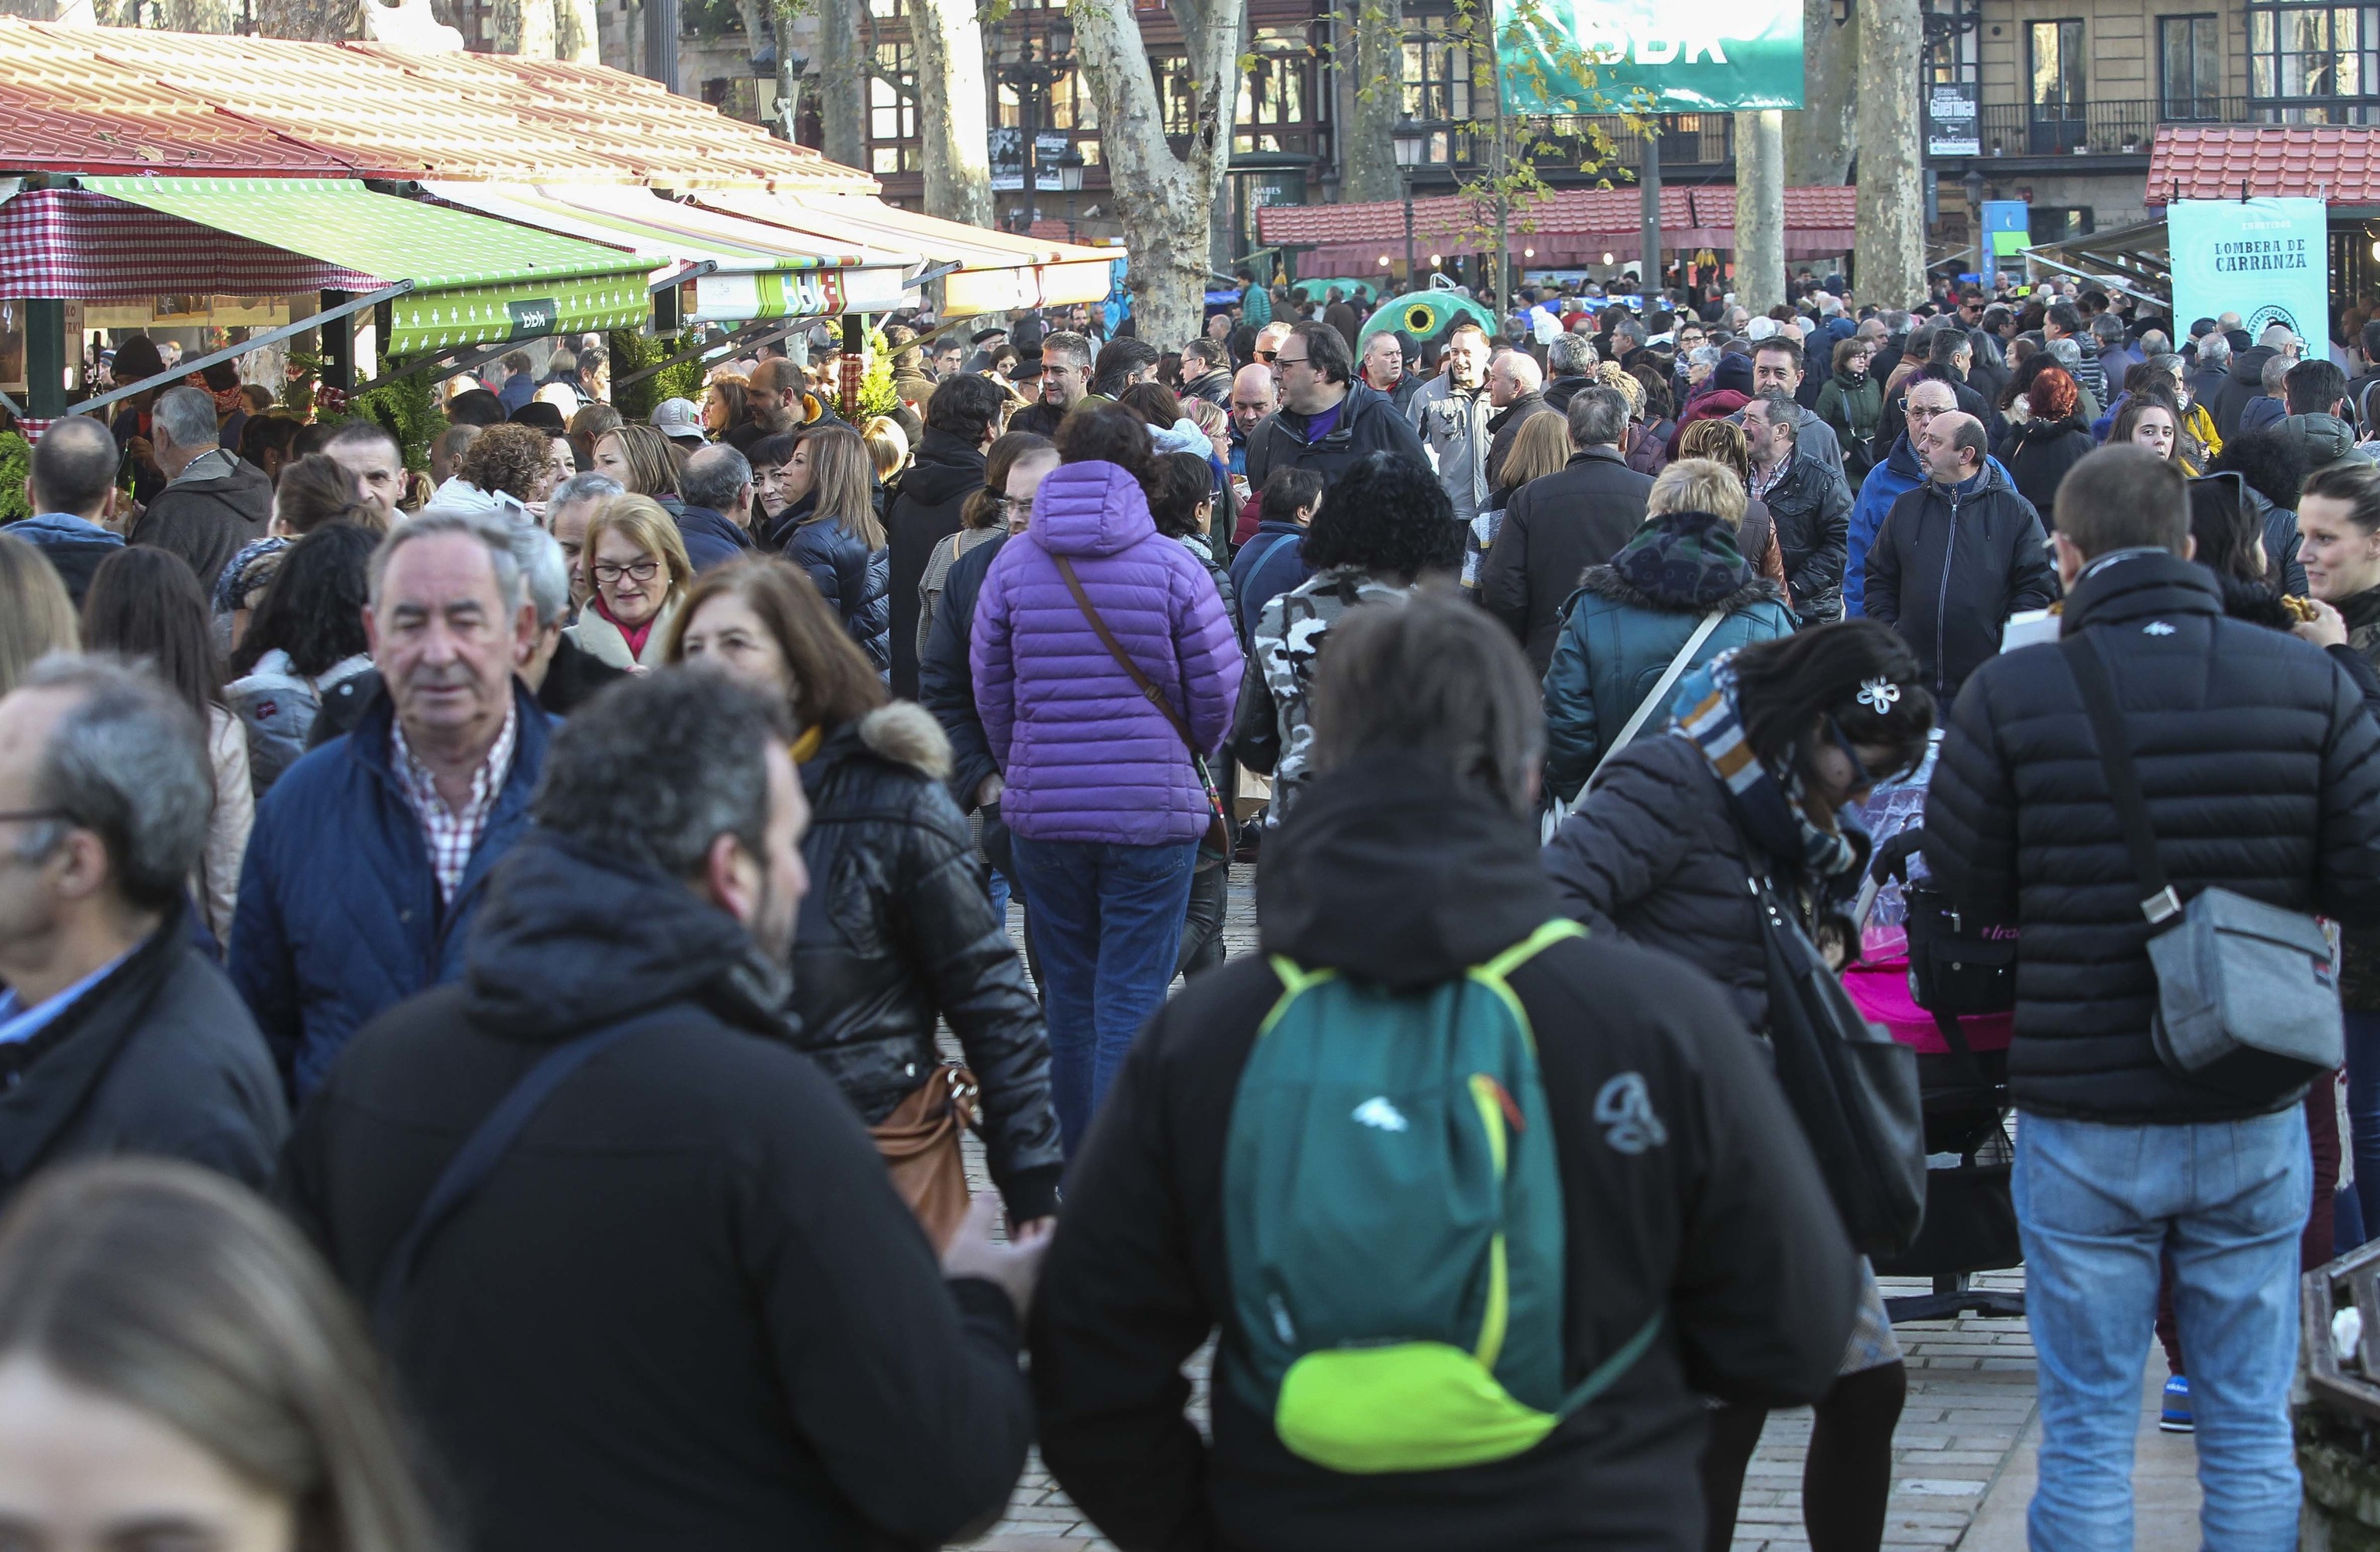 Grupos de personas acuden al mercado de Santo Toms en Bilbao, uno de los eventos que el Ayuntamiento de Bilbao prepara antes de la Navidad.